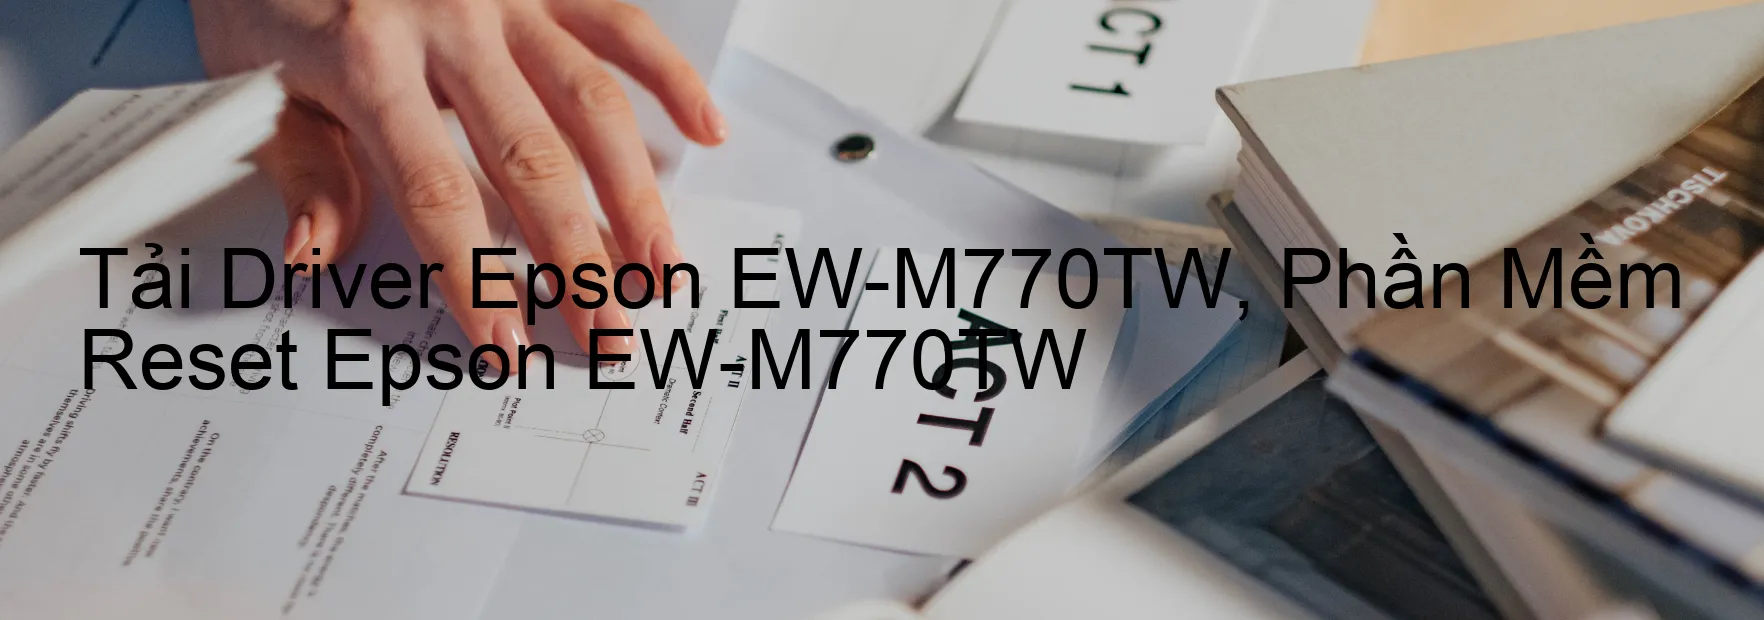 Driver Epson EW-M770TW, Phần Mềm Reset Epson EW-M770TW